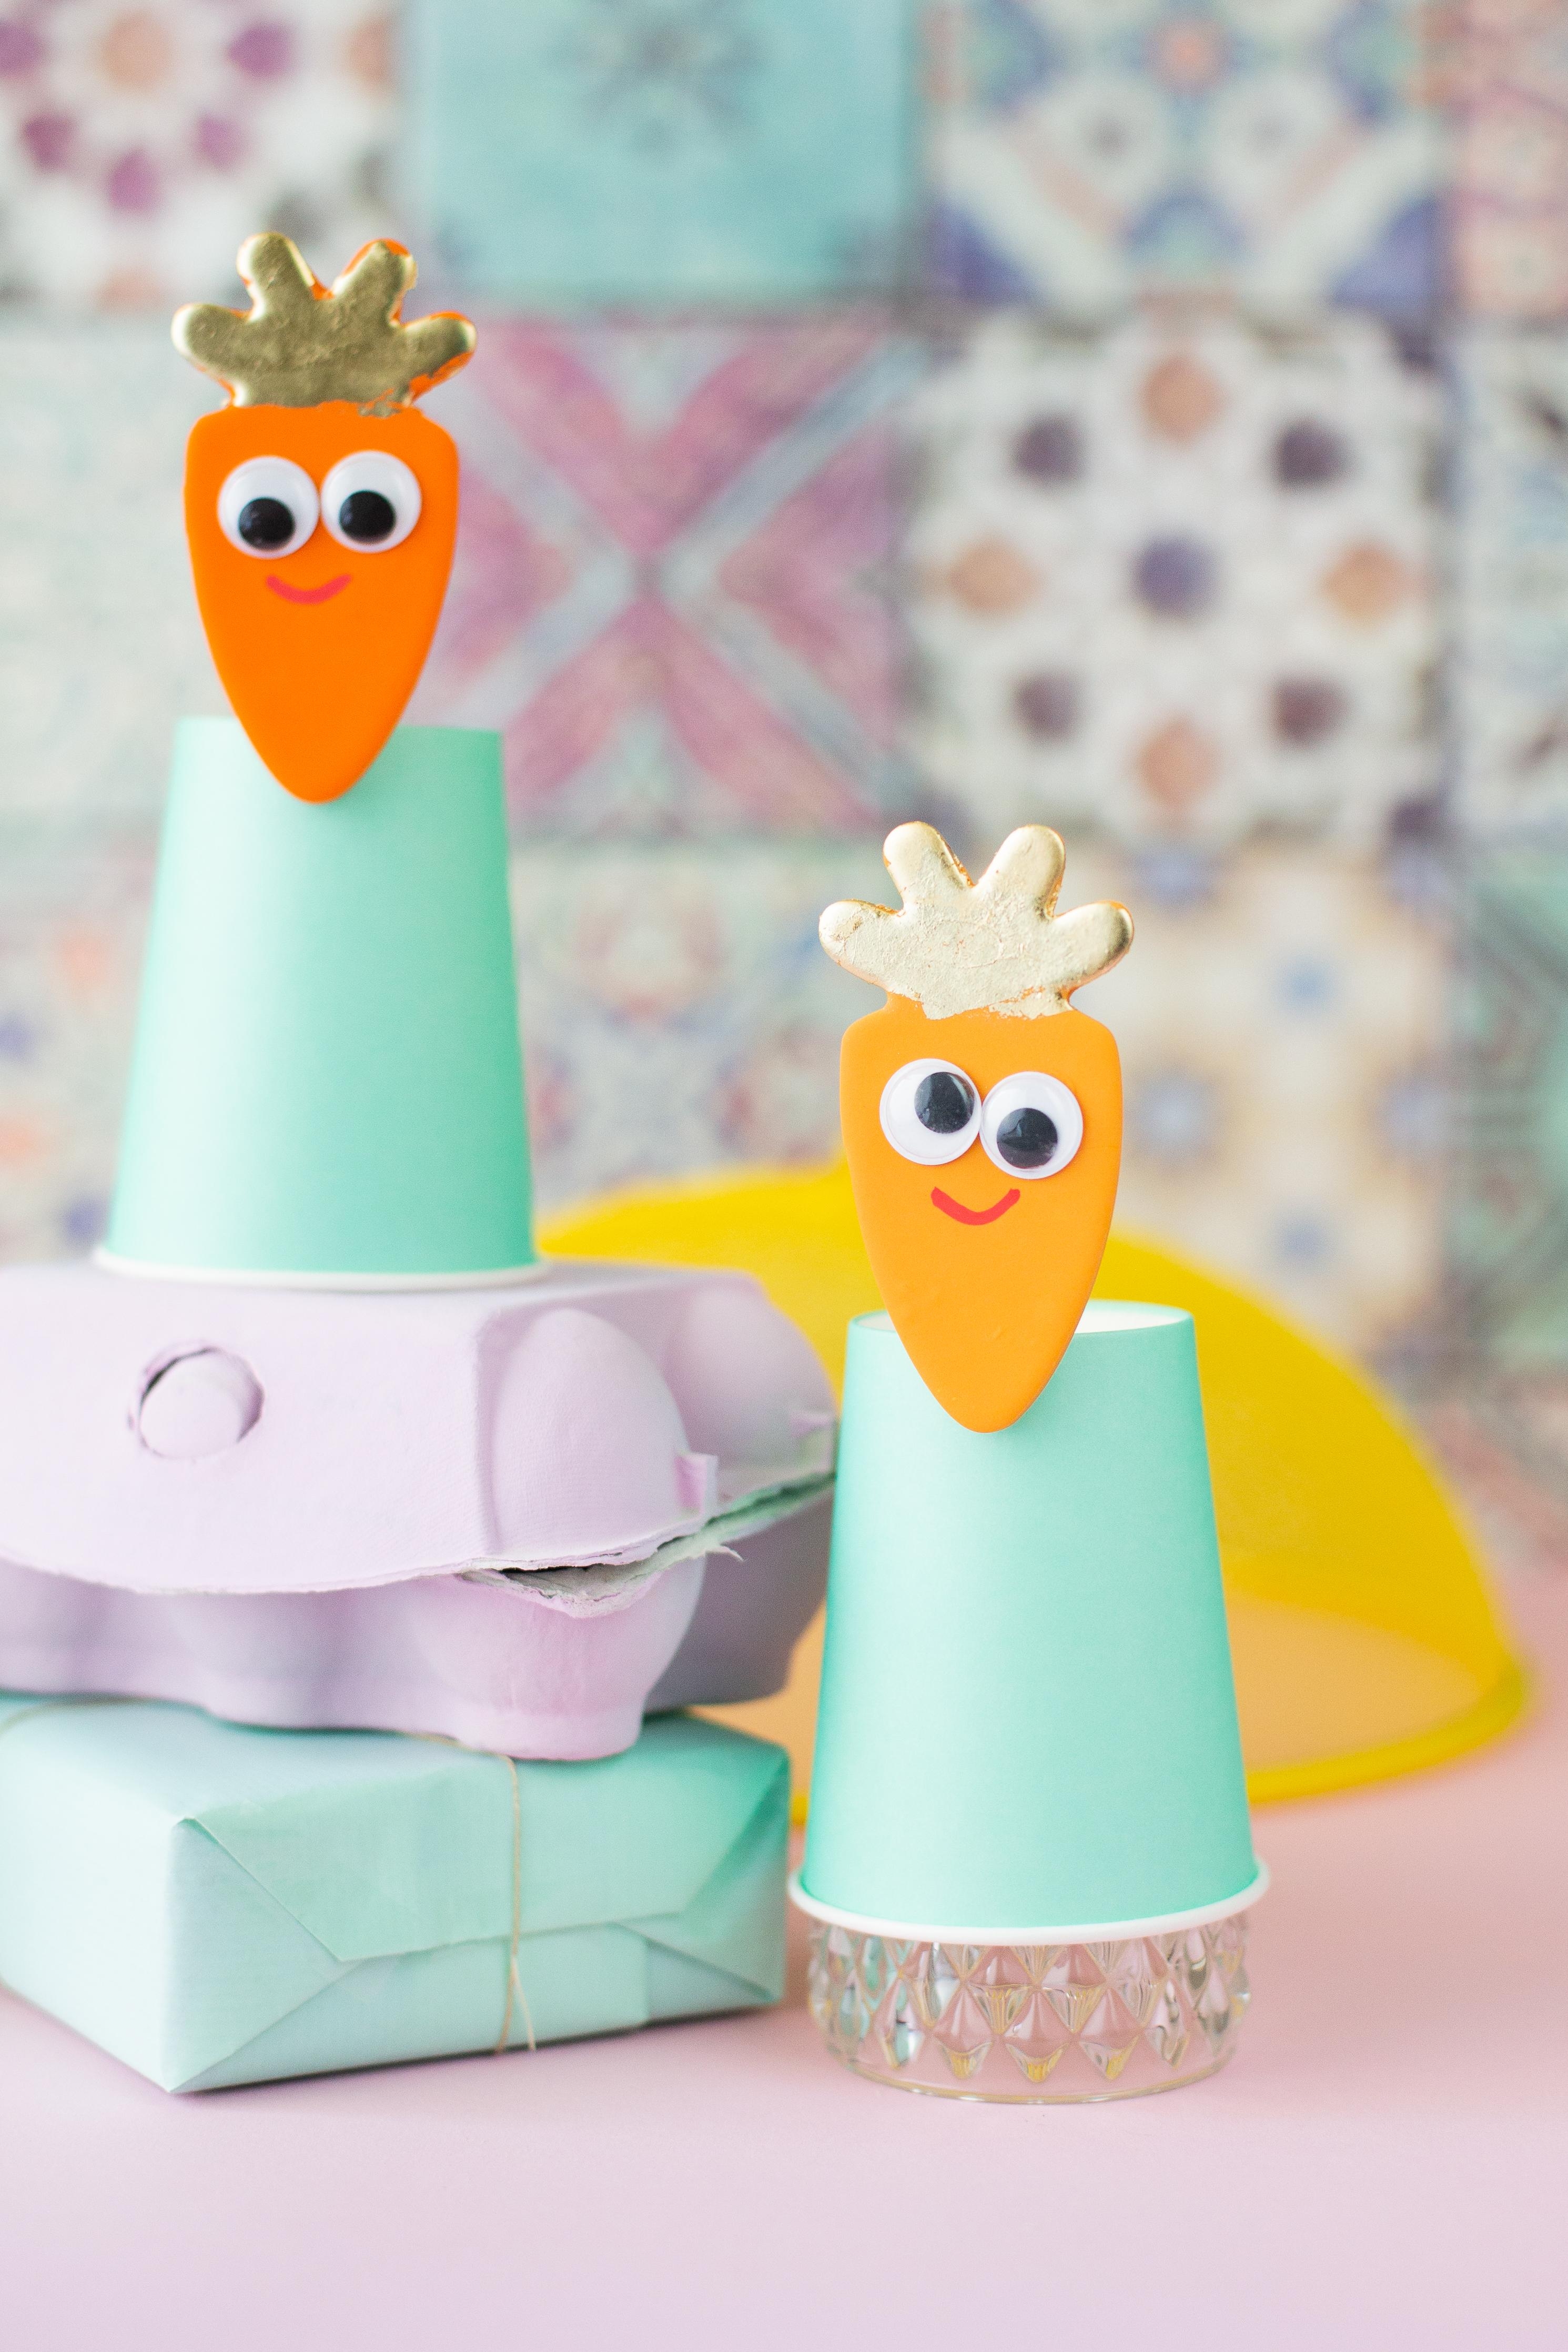 Ostergeschenke kreativ verpacken - Lotti die Karotte

#wiebkeliebtDIY#Ostern2019#easydiy